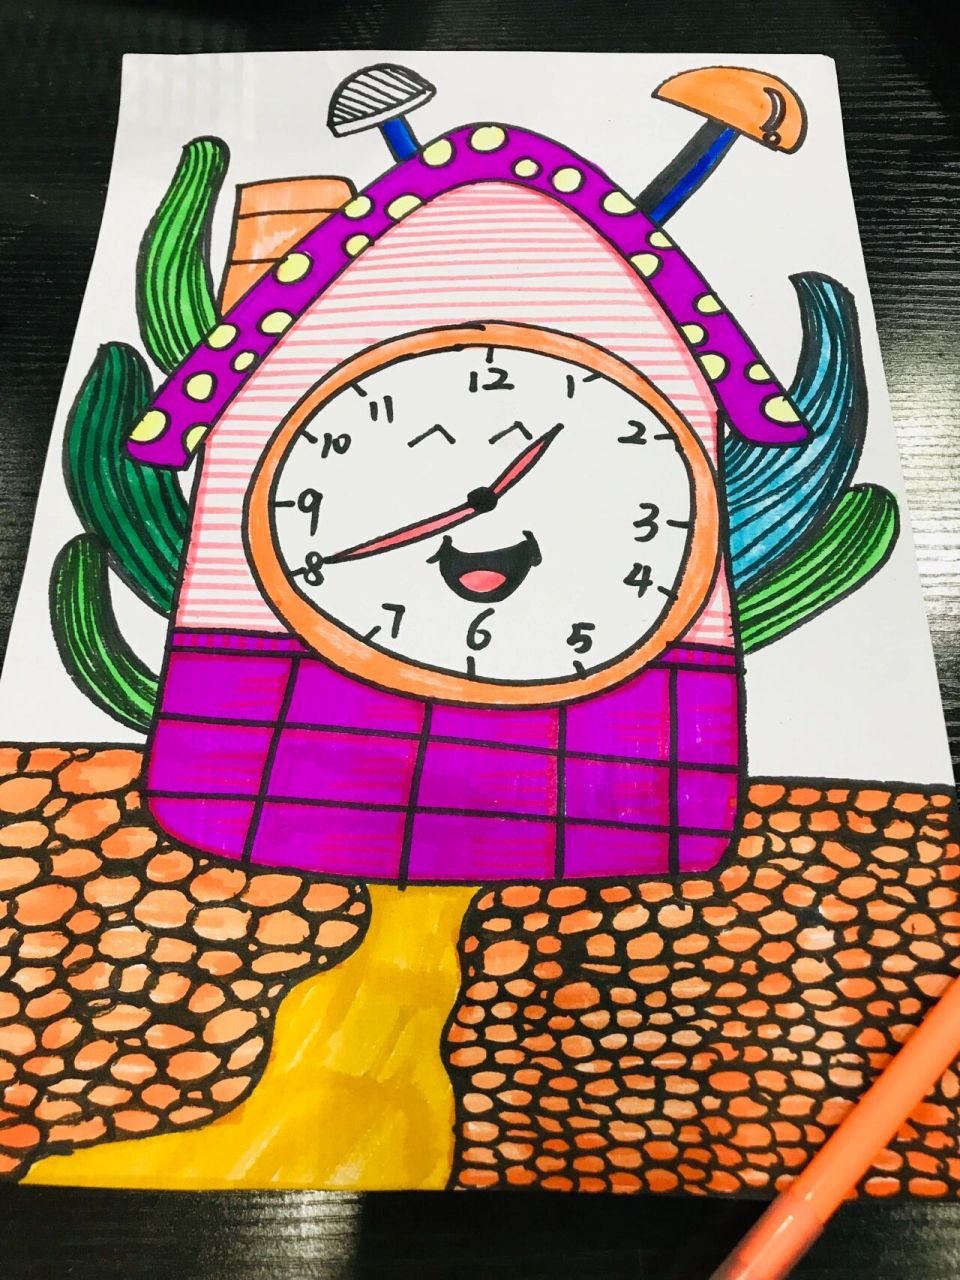 【绘画】闹钟创意画 闹钟儿童画 有趣的闹钟